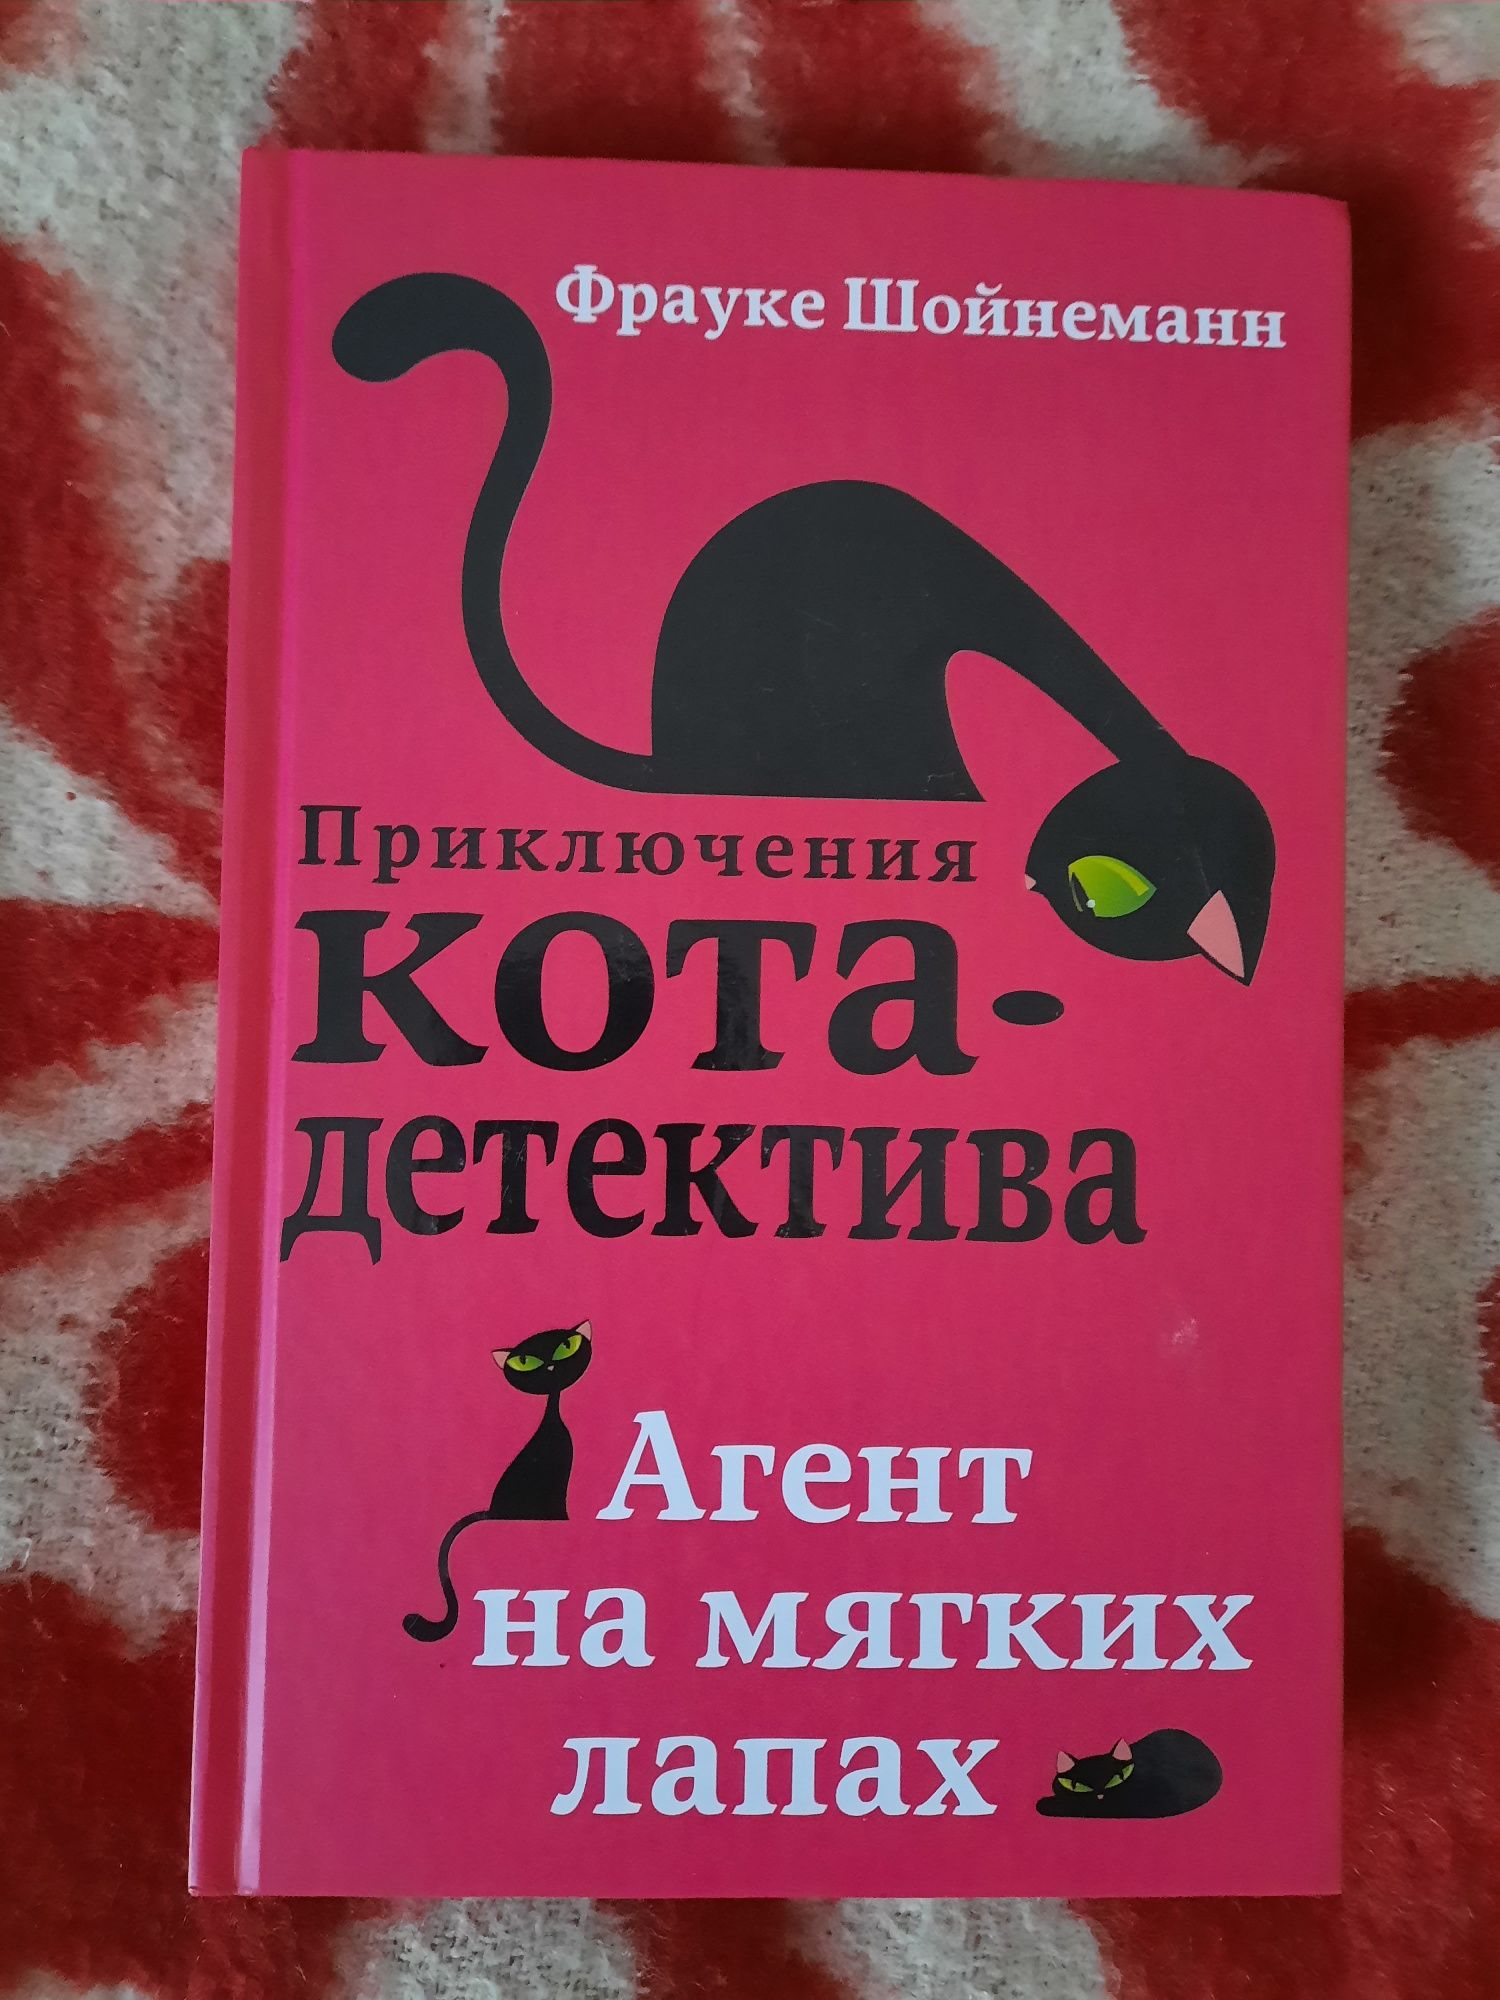 Книга "Приключения кота детектива"